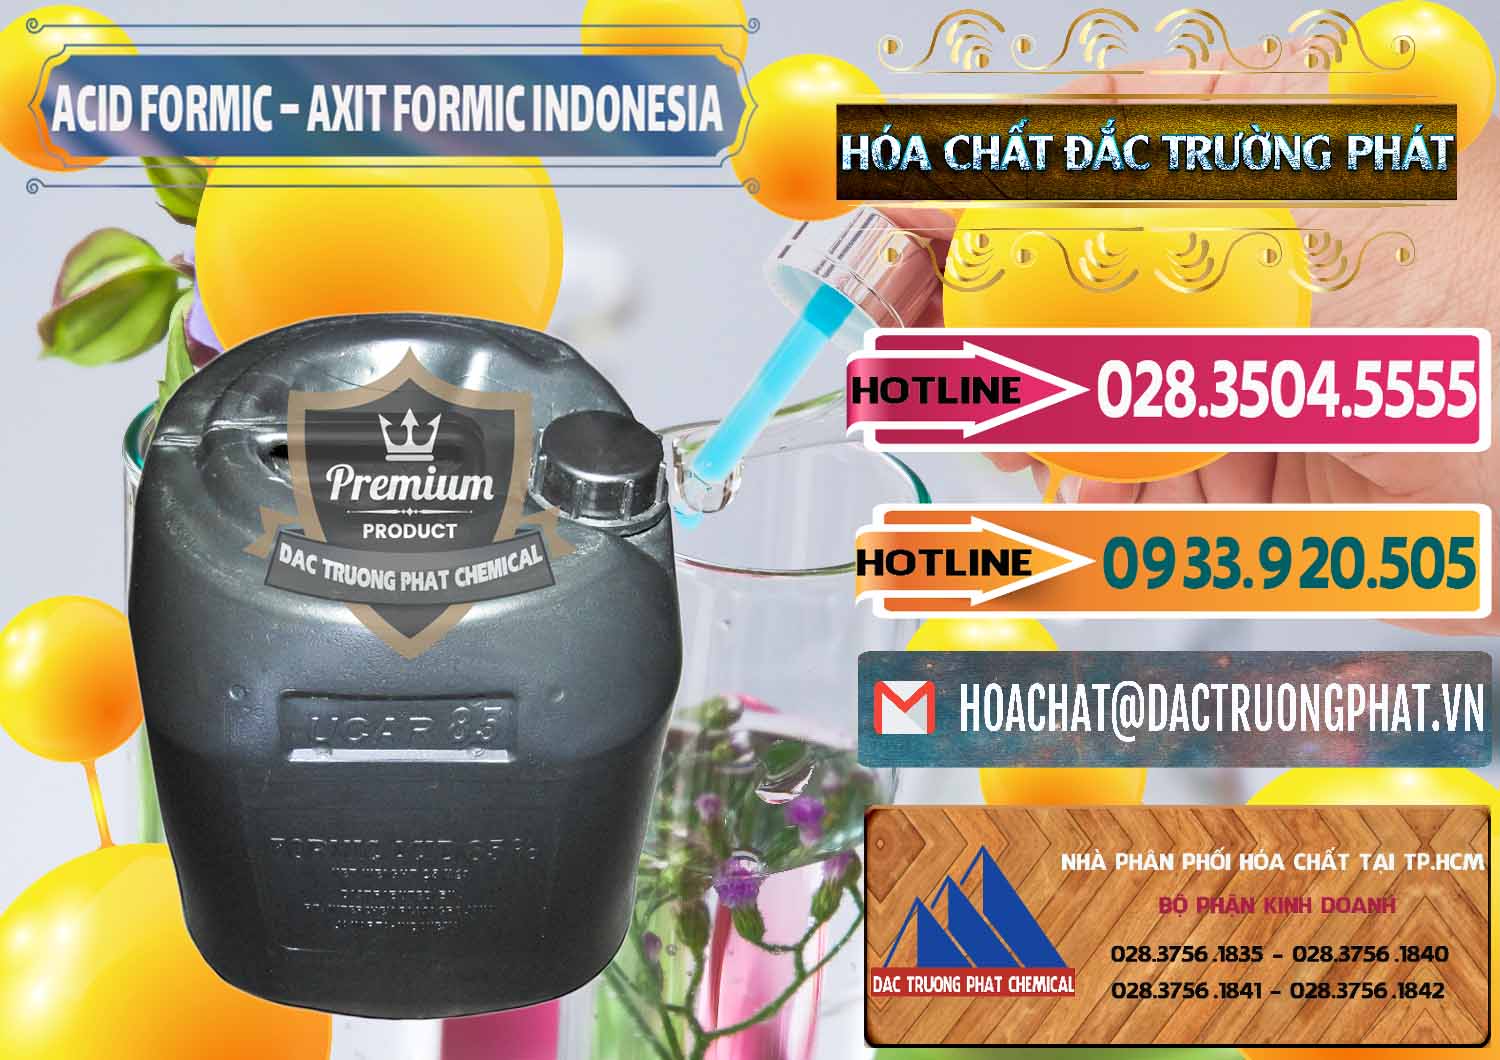 Cty chuyên phân phối - bán Acid Formic - Axit Formic Indonesia - 0026 - Nhà cung cấp _ nhập khẩu hóa chất tại TP.HCM - dactruongphat.vn